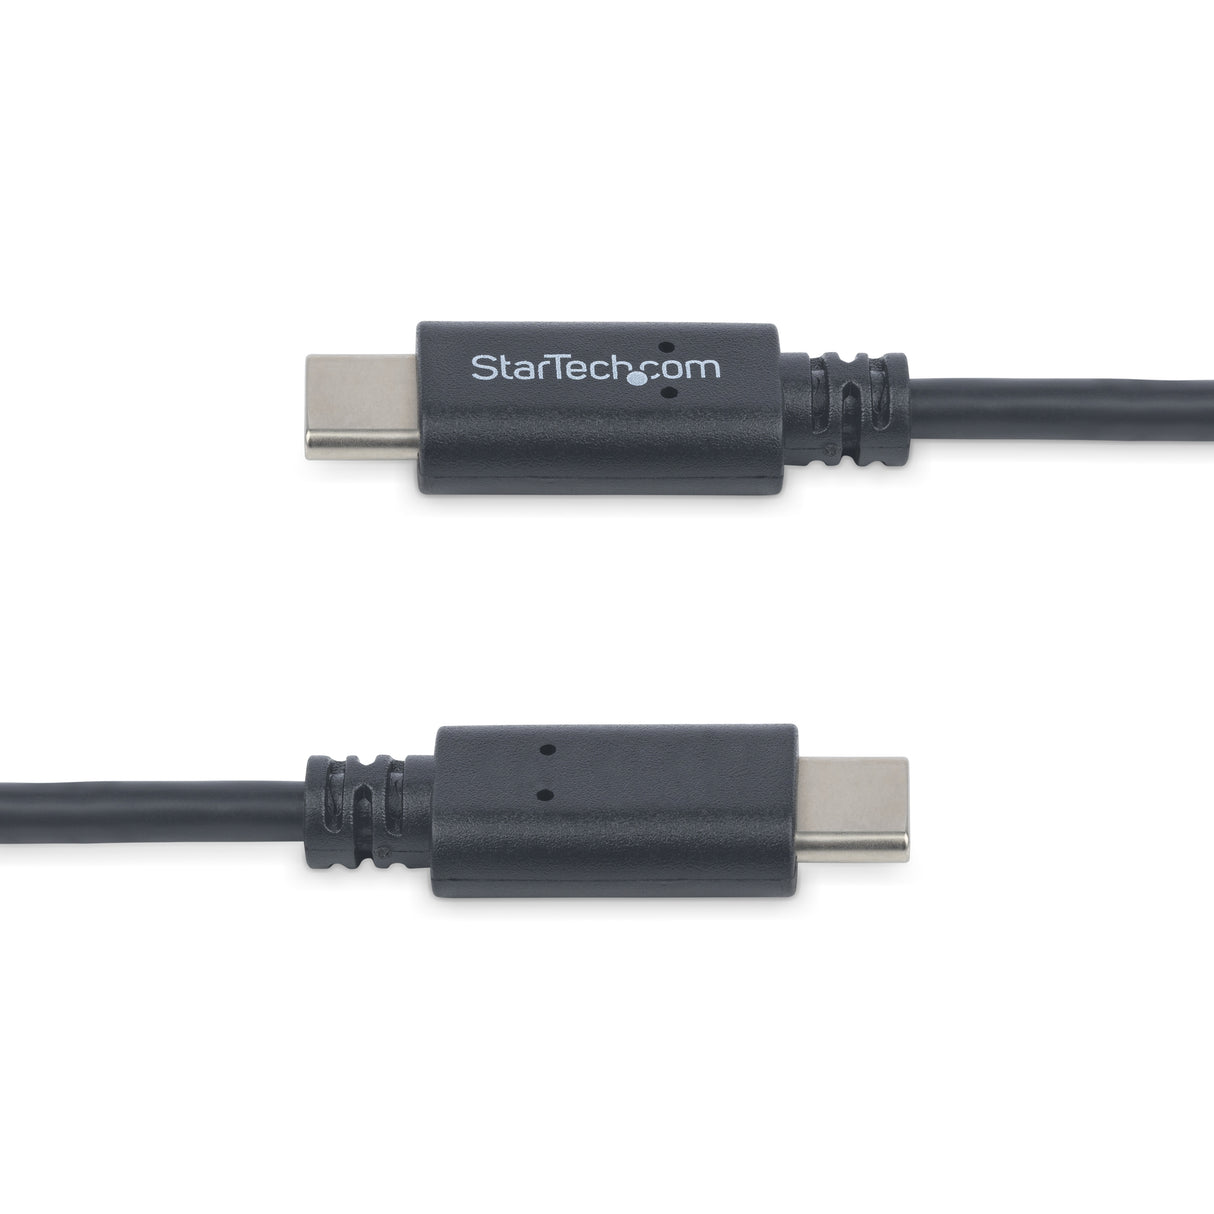 STARTECH 1m 3 ft USB C Cable - M|M - USB 2.0 - USB-IF Certified - USB-C Charging Cable - USB 2.0 Type C Cable (USB2CC1M)